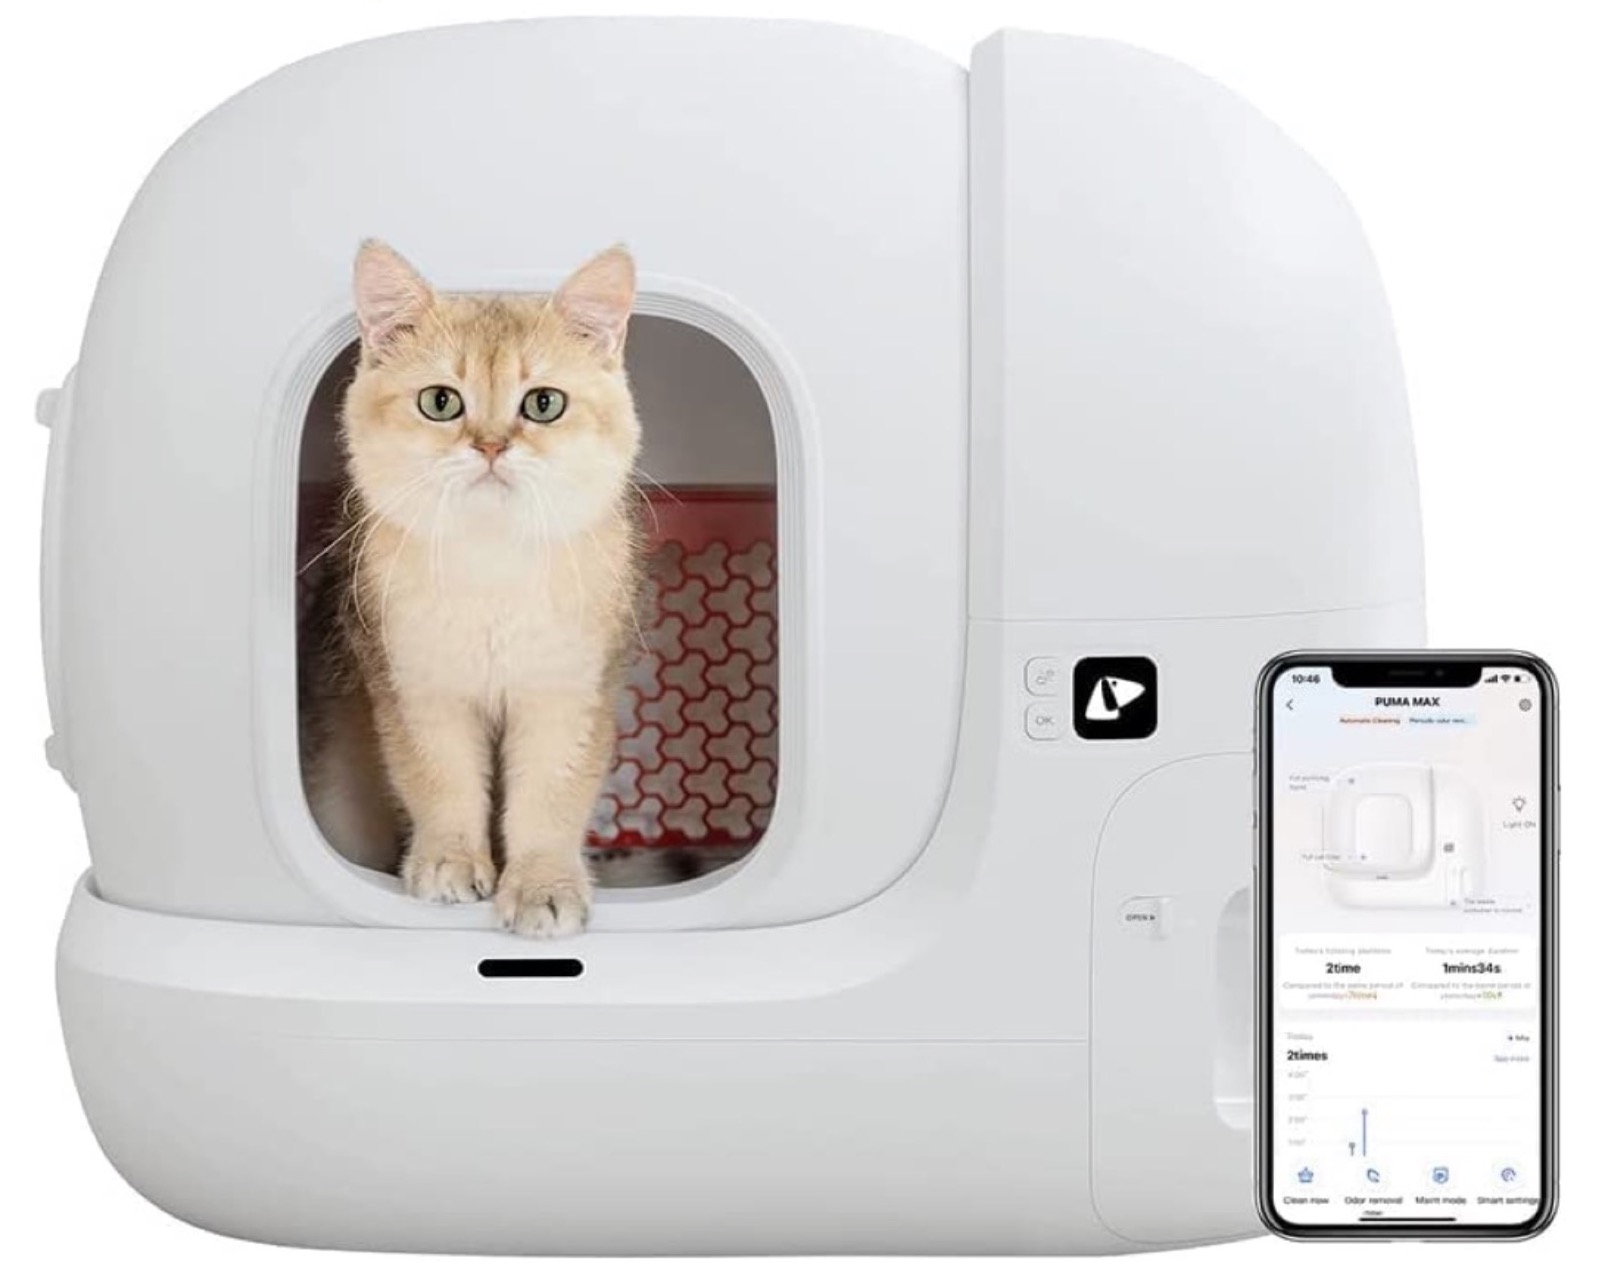 PETKIT Pura Max, la lettiera automatica per gatti connessa con iPhone 